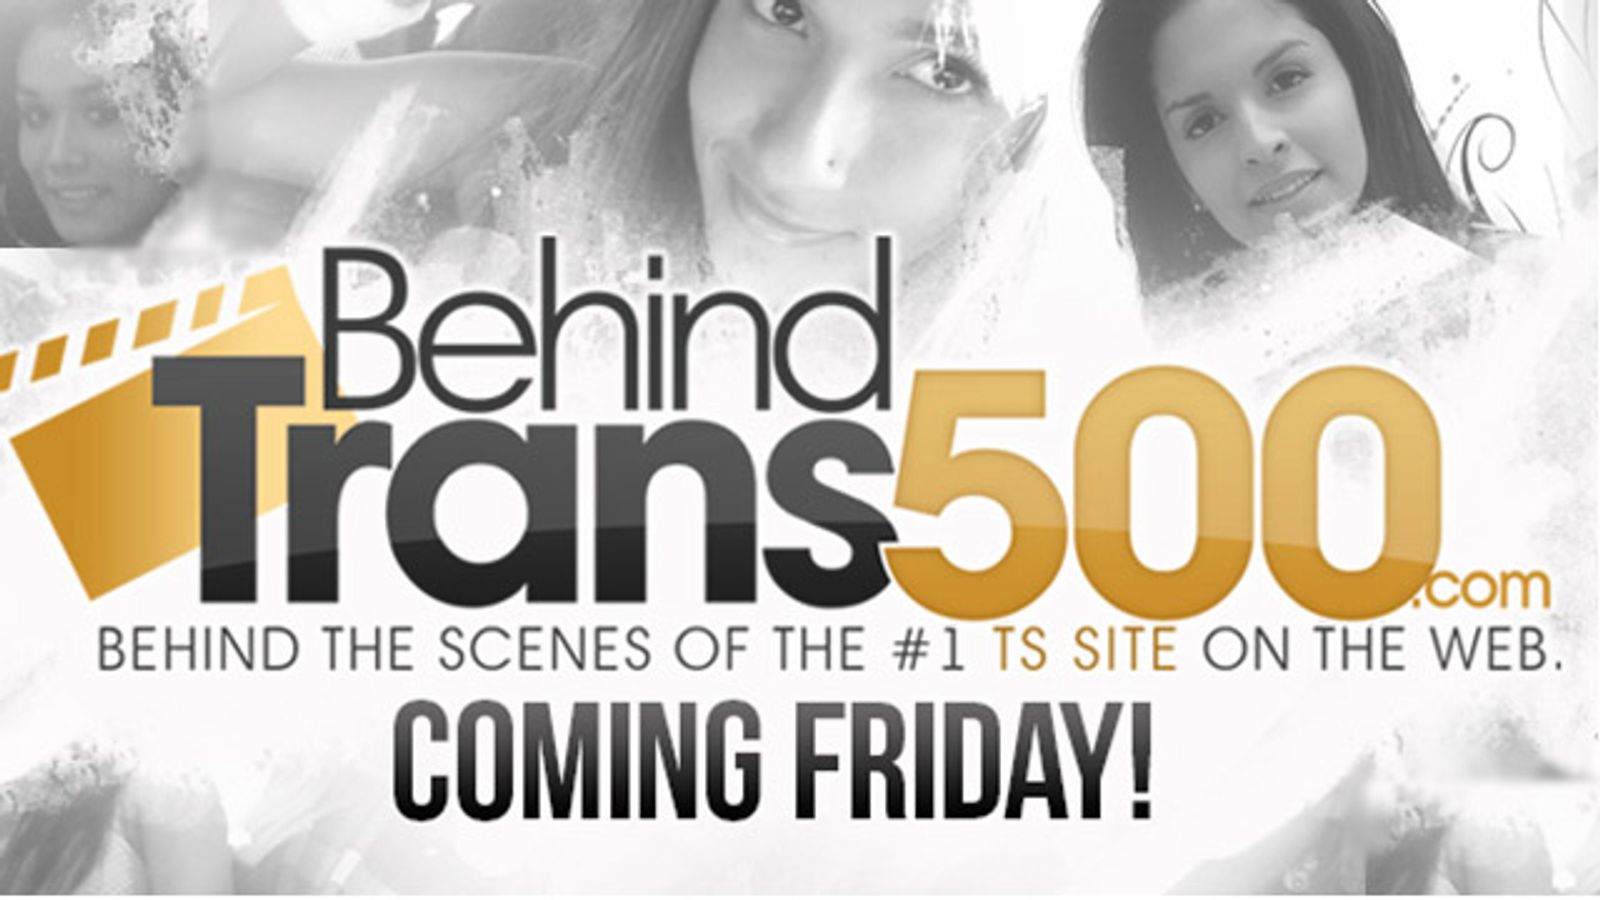 Trans500 Launches BTS Site BehindTrans500.com